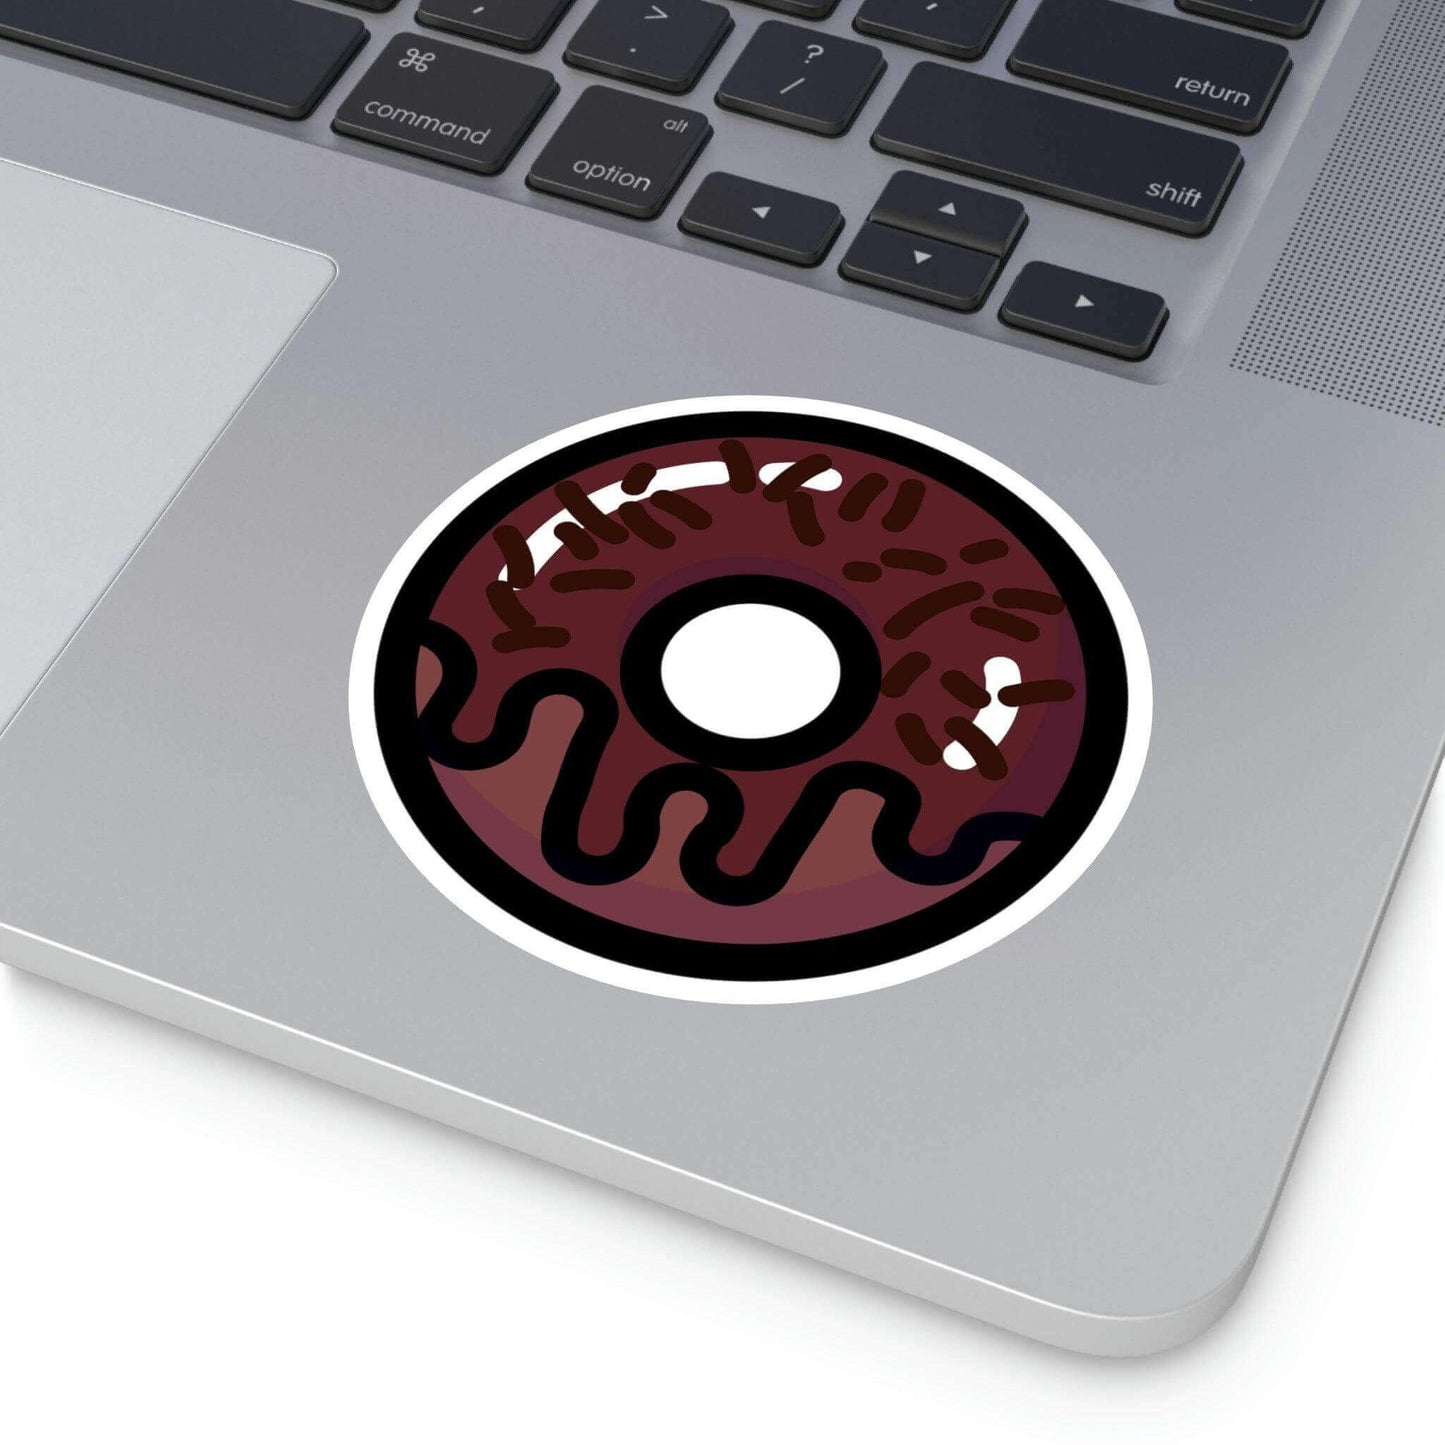 Chocolate Donut Sticker - Premium Paper - Shaneinvasion - On laptop